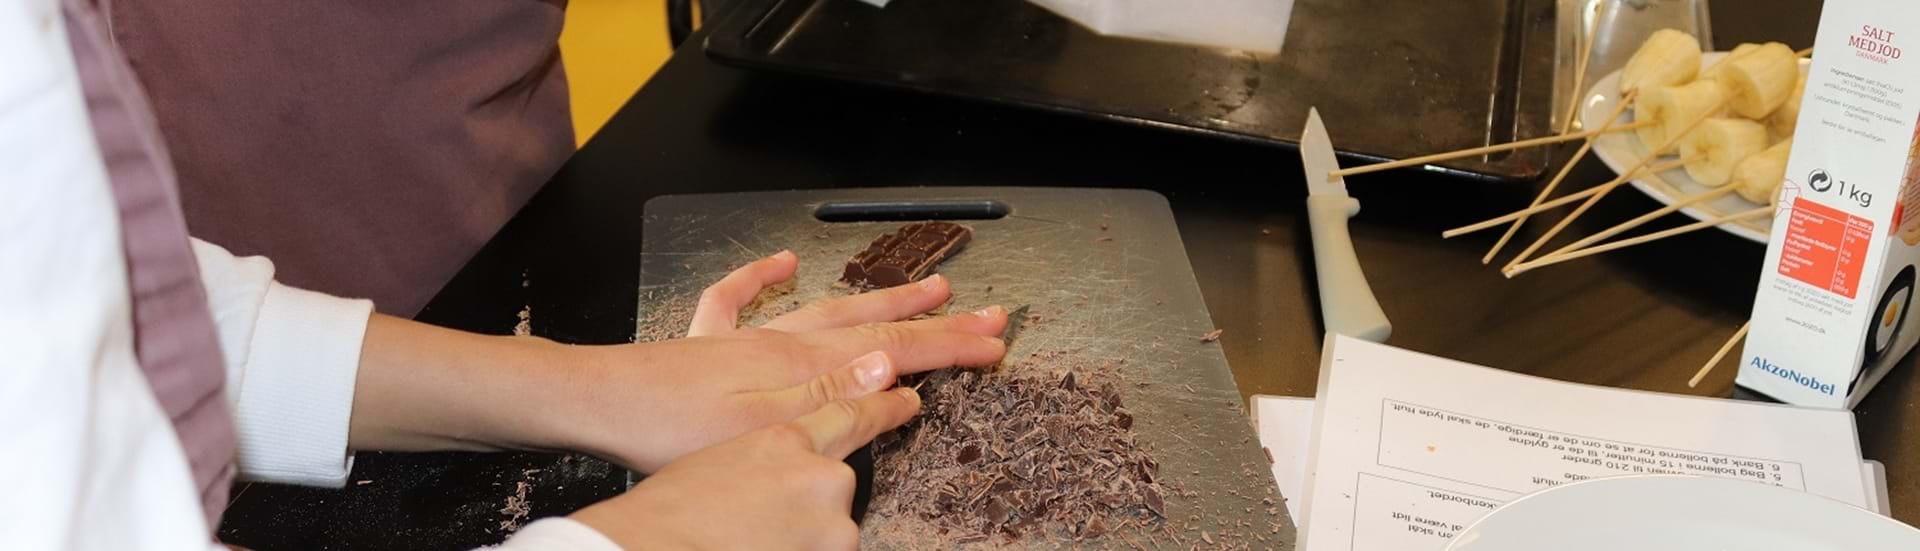 Hakker chokolade på et skærebrædt.